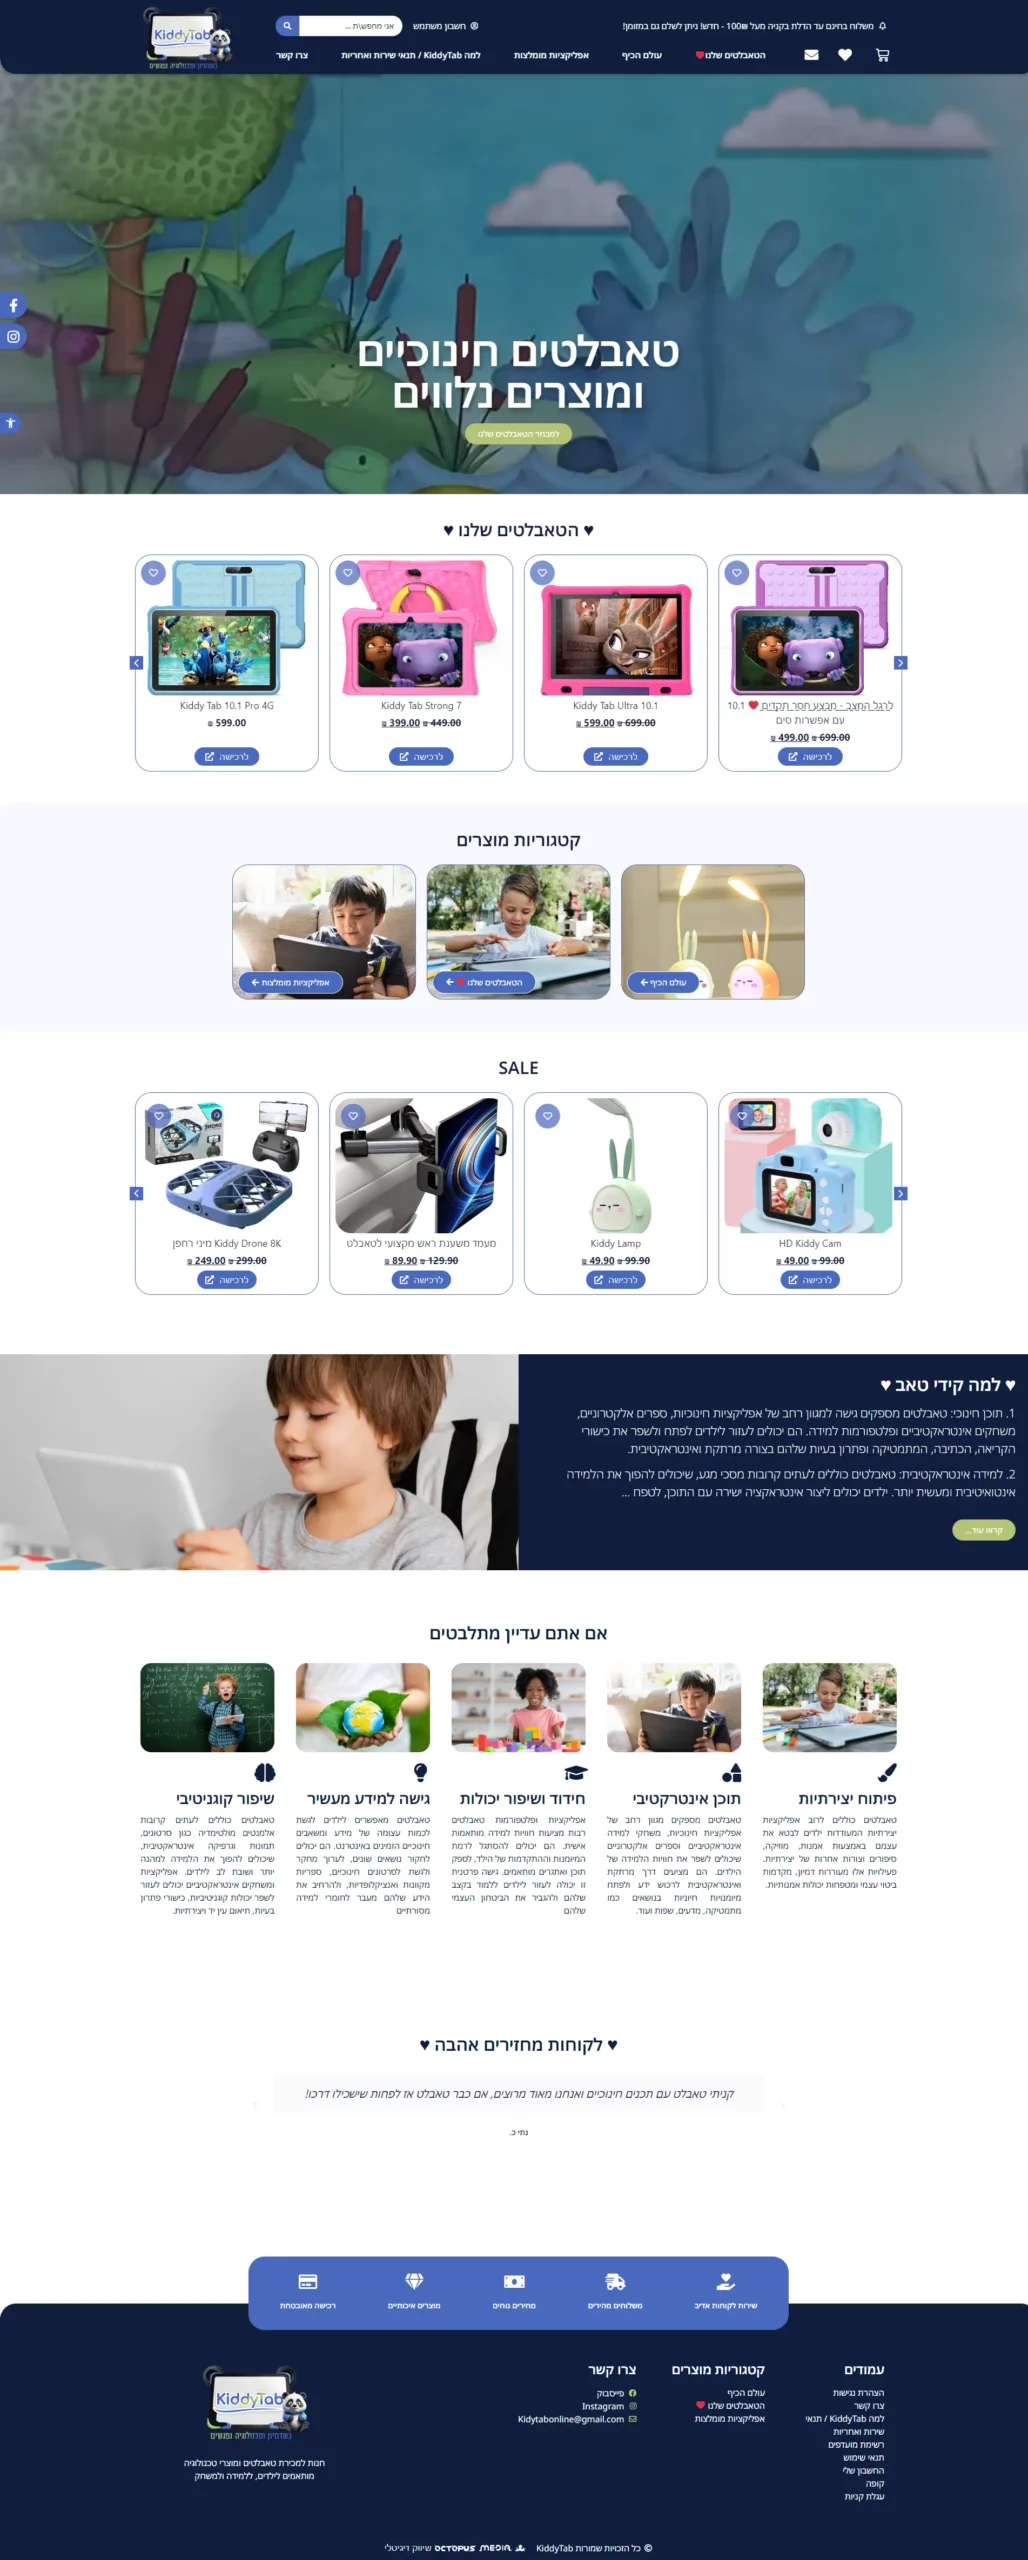 עיצוב ובניית חנות מקוונת למוצרי לימוד ואלקטרוניקה לילדים